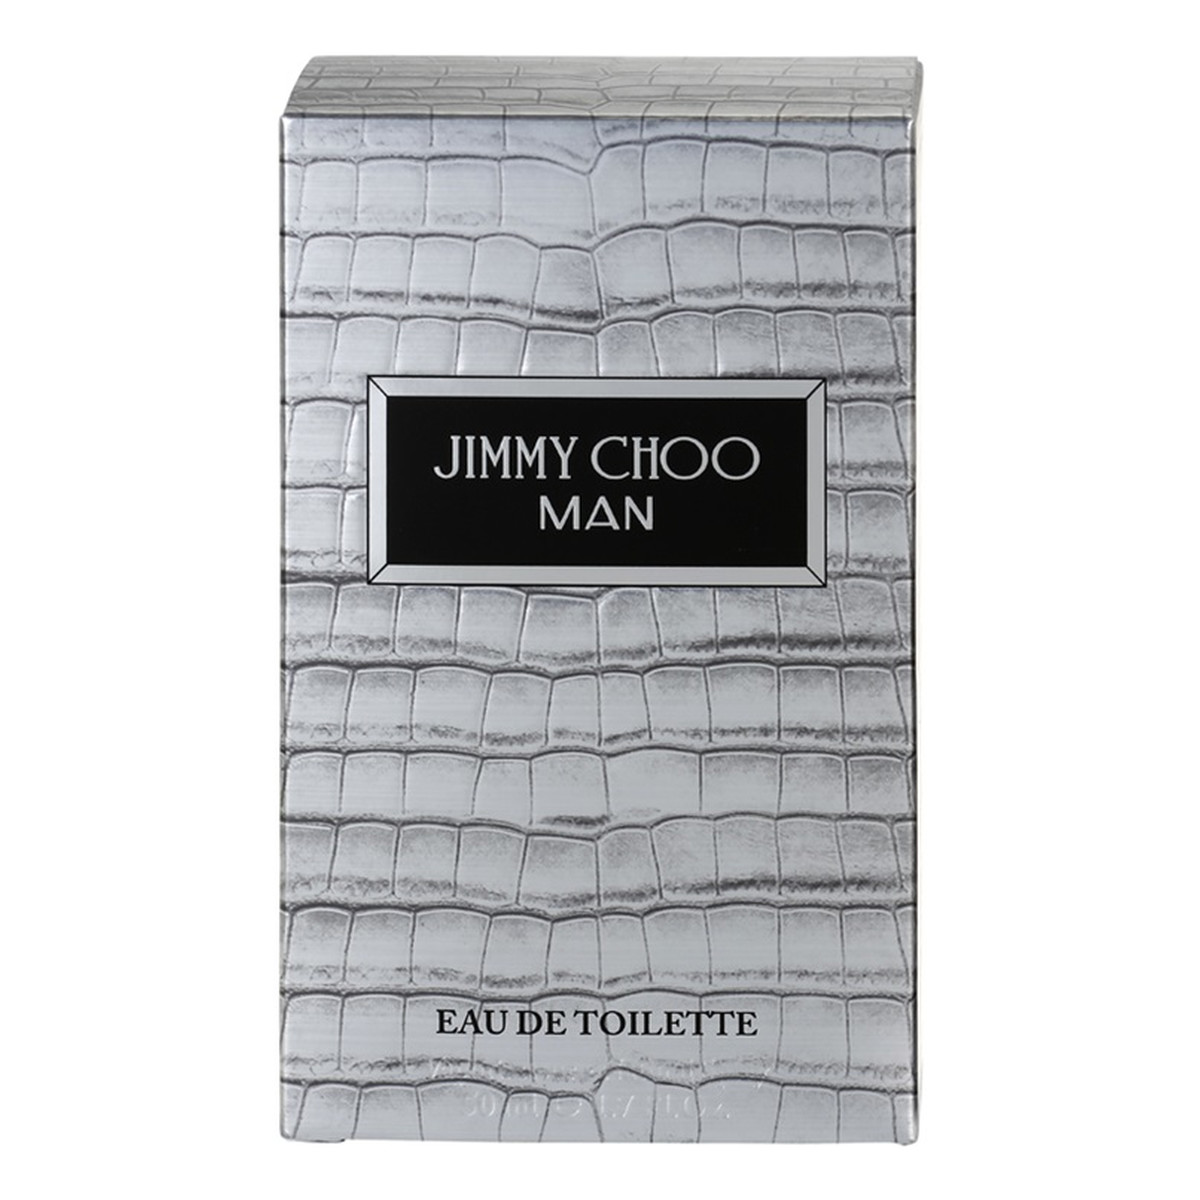 Jimmy Choo Man woda toaletowa 50ml